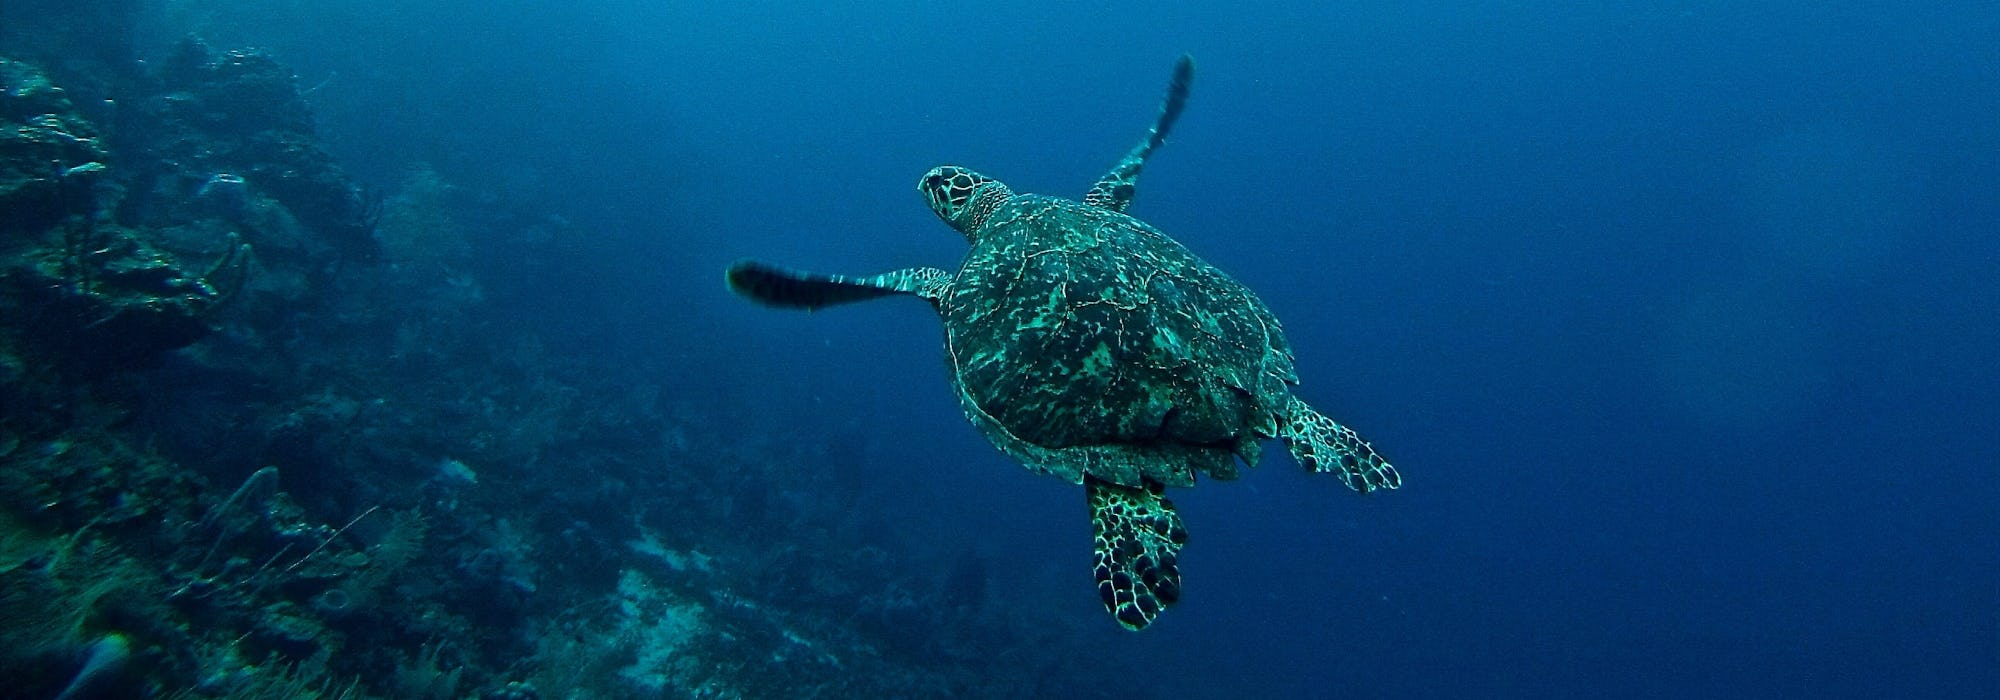 En sköldpadda glider fram under vattnet till höger om ett korallrev.